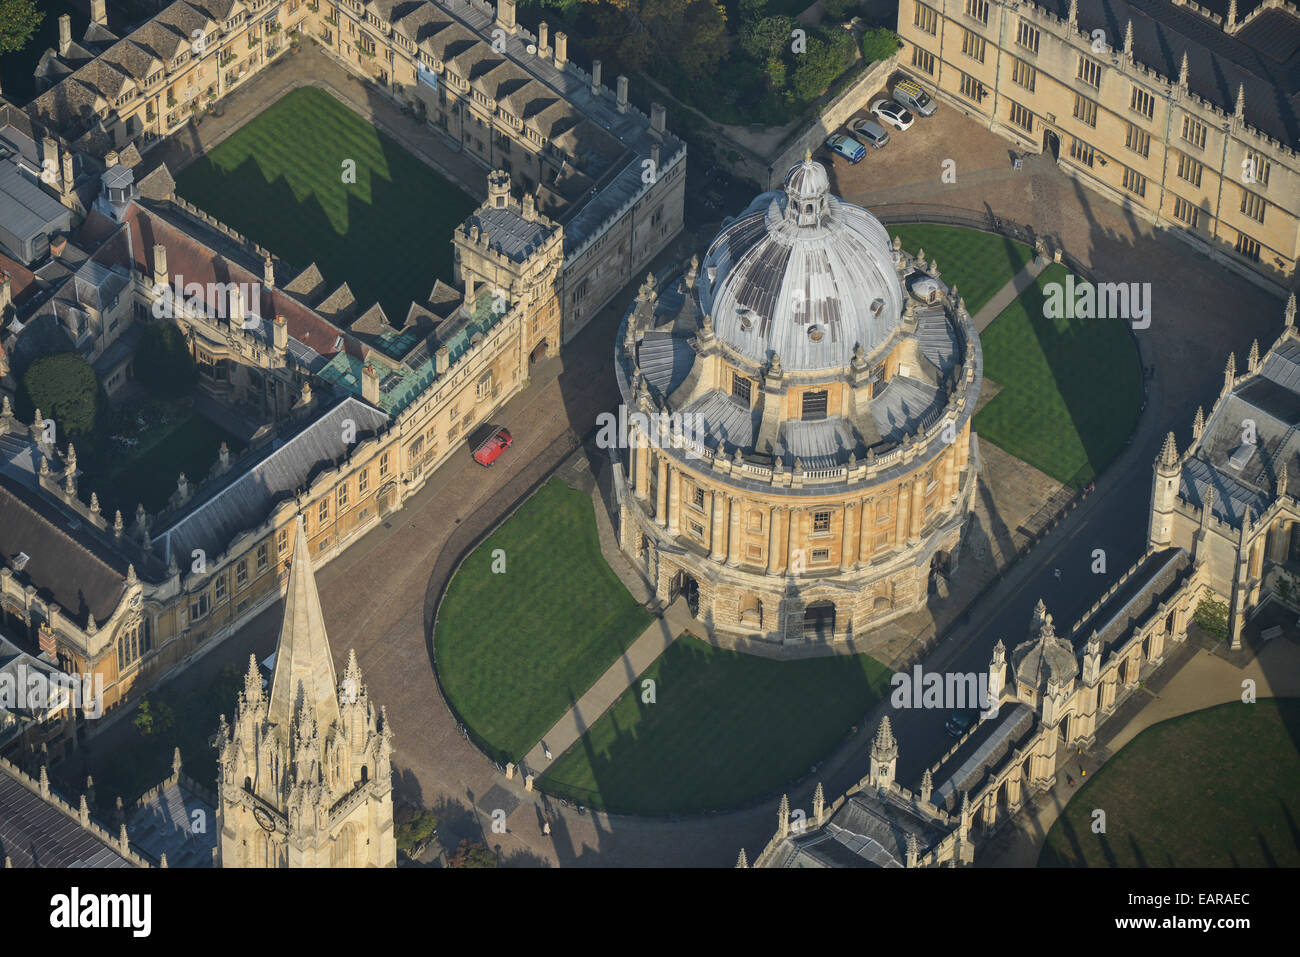 Une vue aérienne de la Radcliffe Camera, une bibliothèque à l'Université d'Oxford Banque D'Images